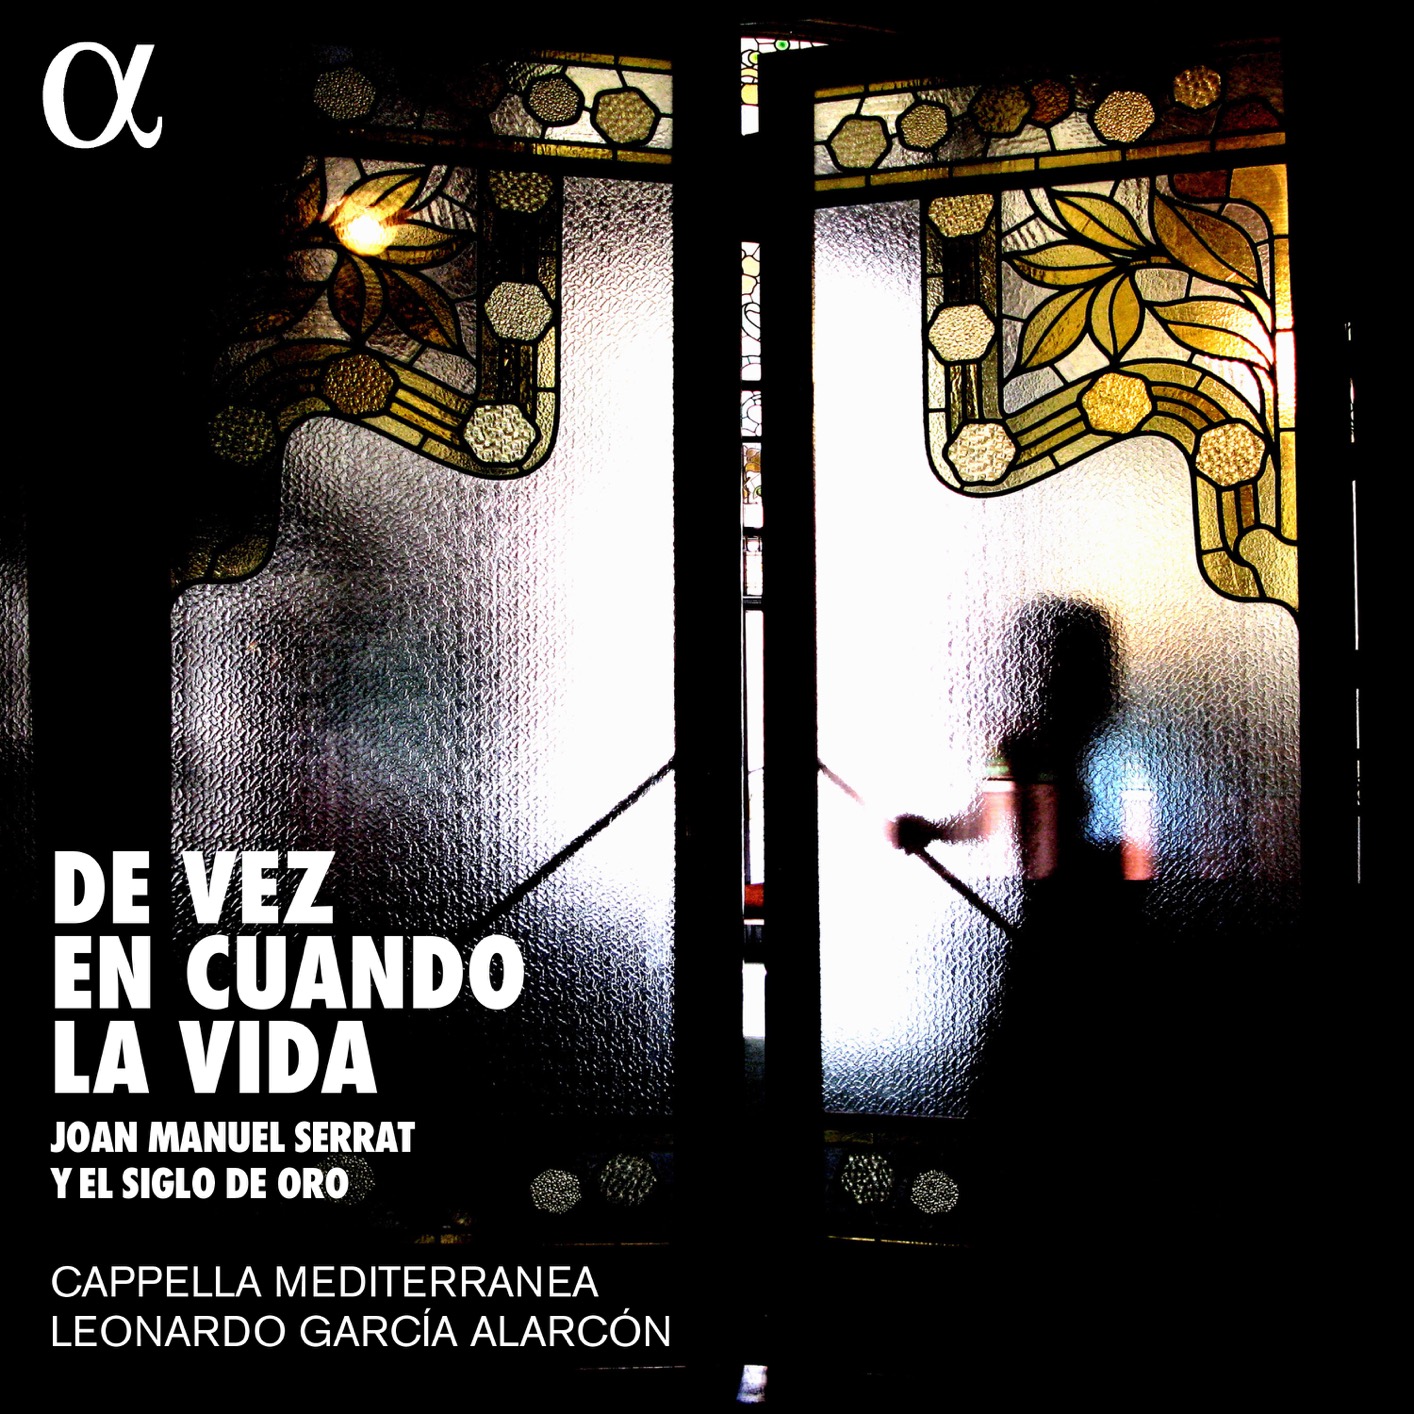 Cappella Mediterranea & Leonardo Garcia Alarcon – De vez en cuando la vida (2018) [FLAC 24bit/88,2kHz]